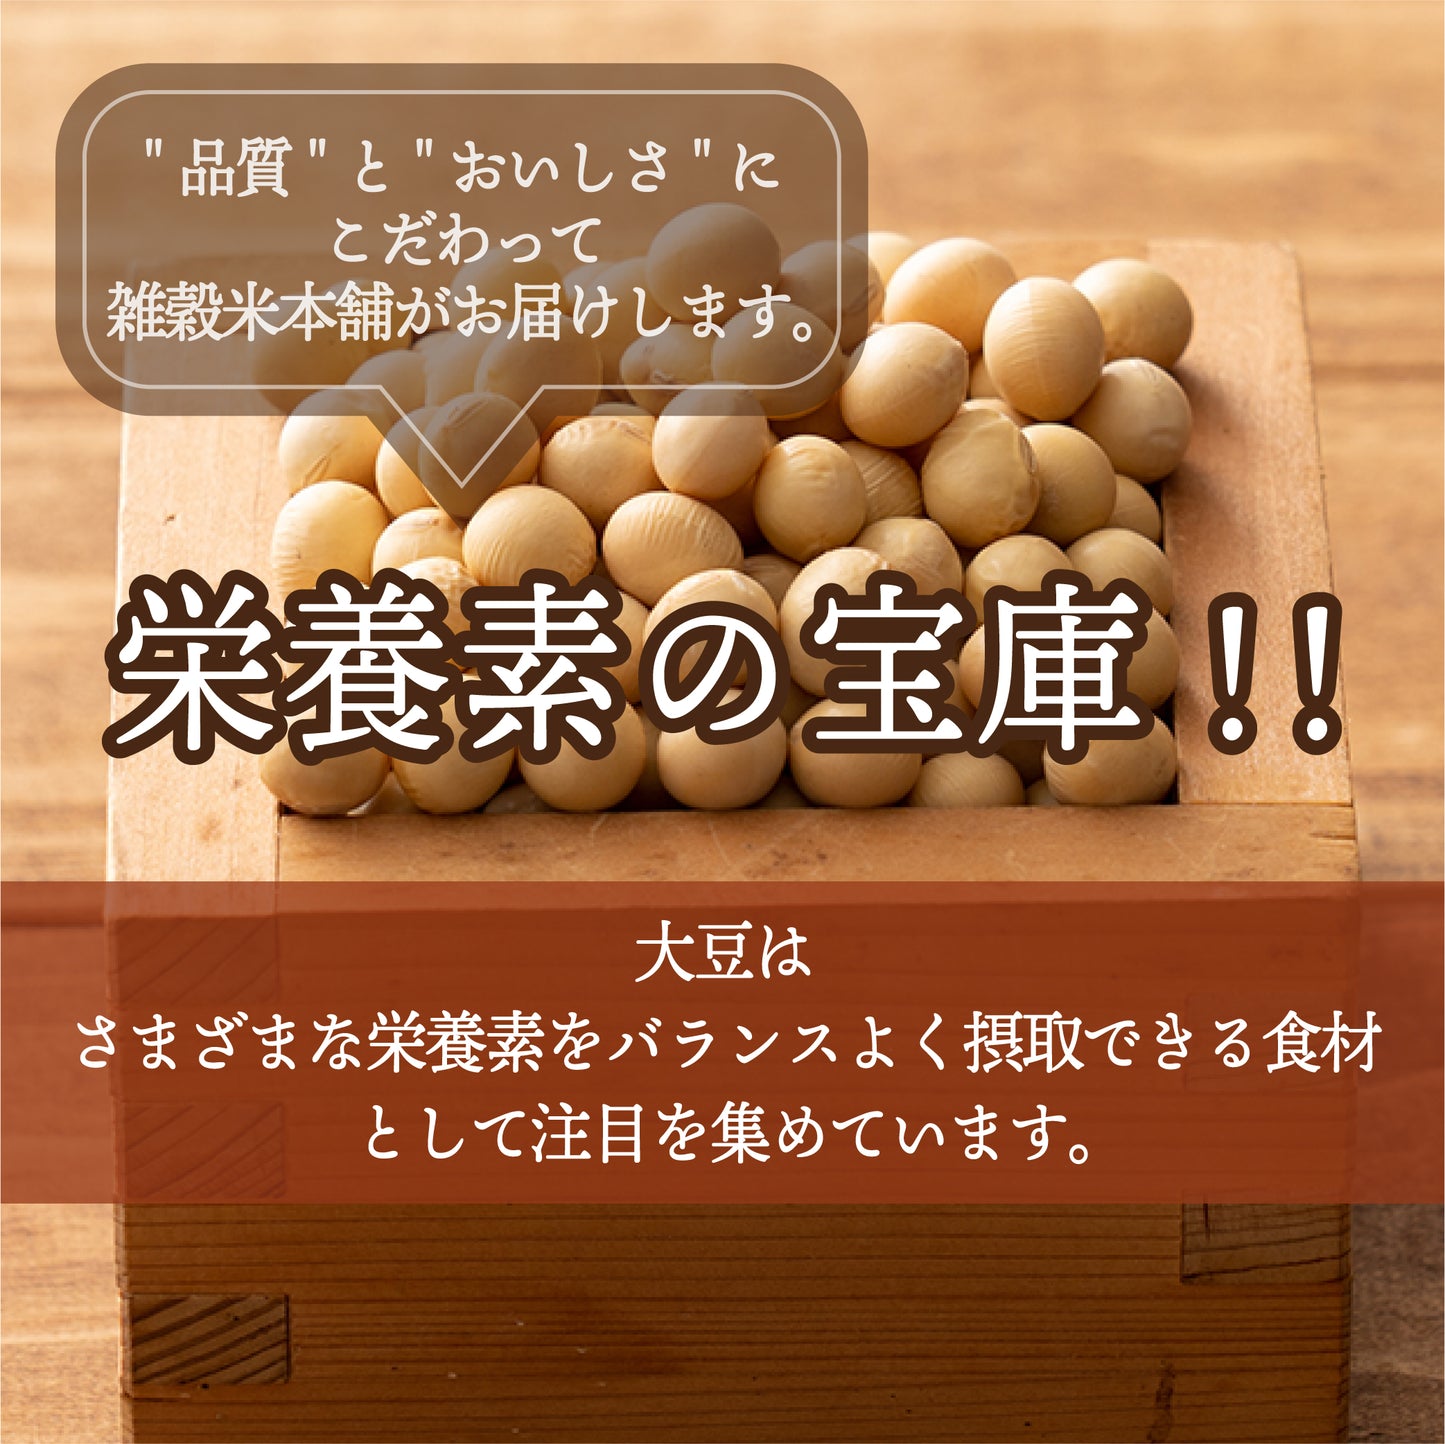 国産 黄大豆 27kg(450g×60袋)